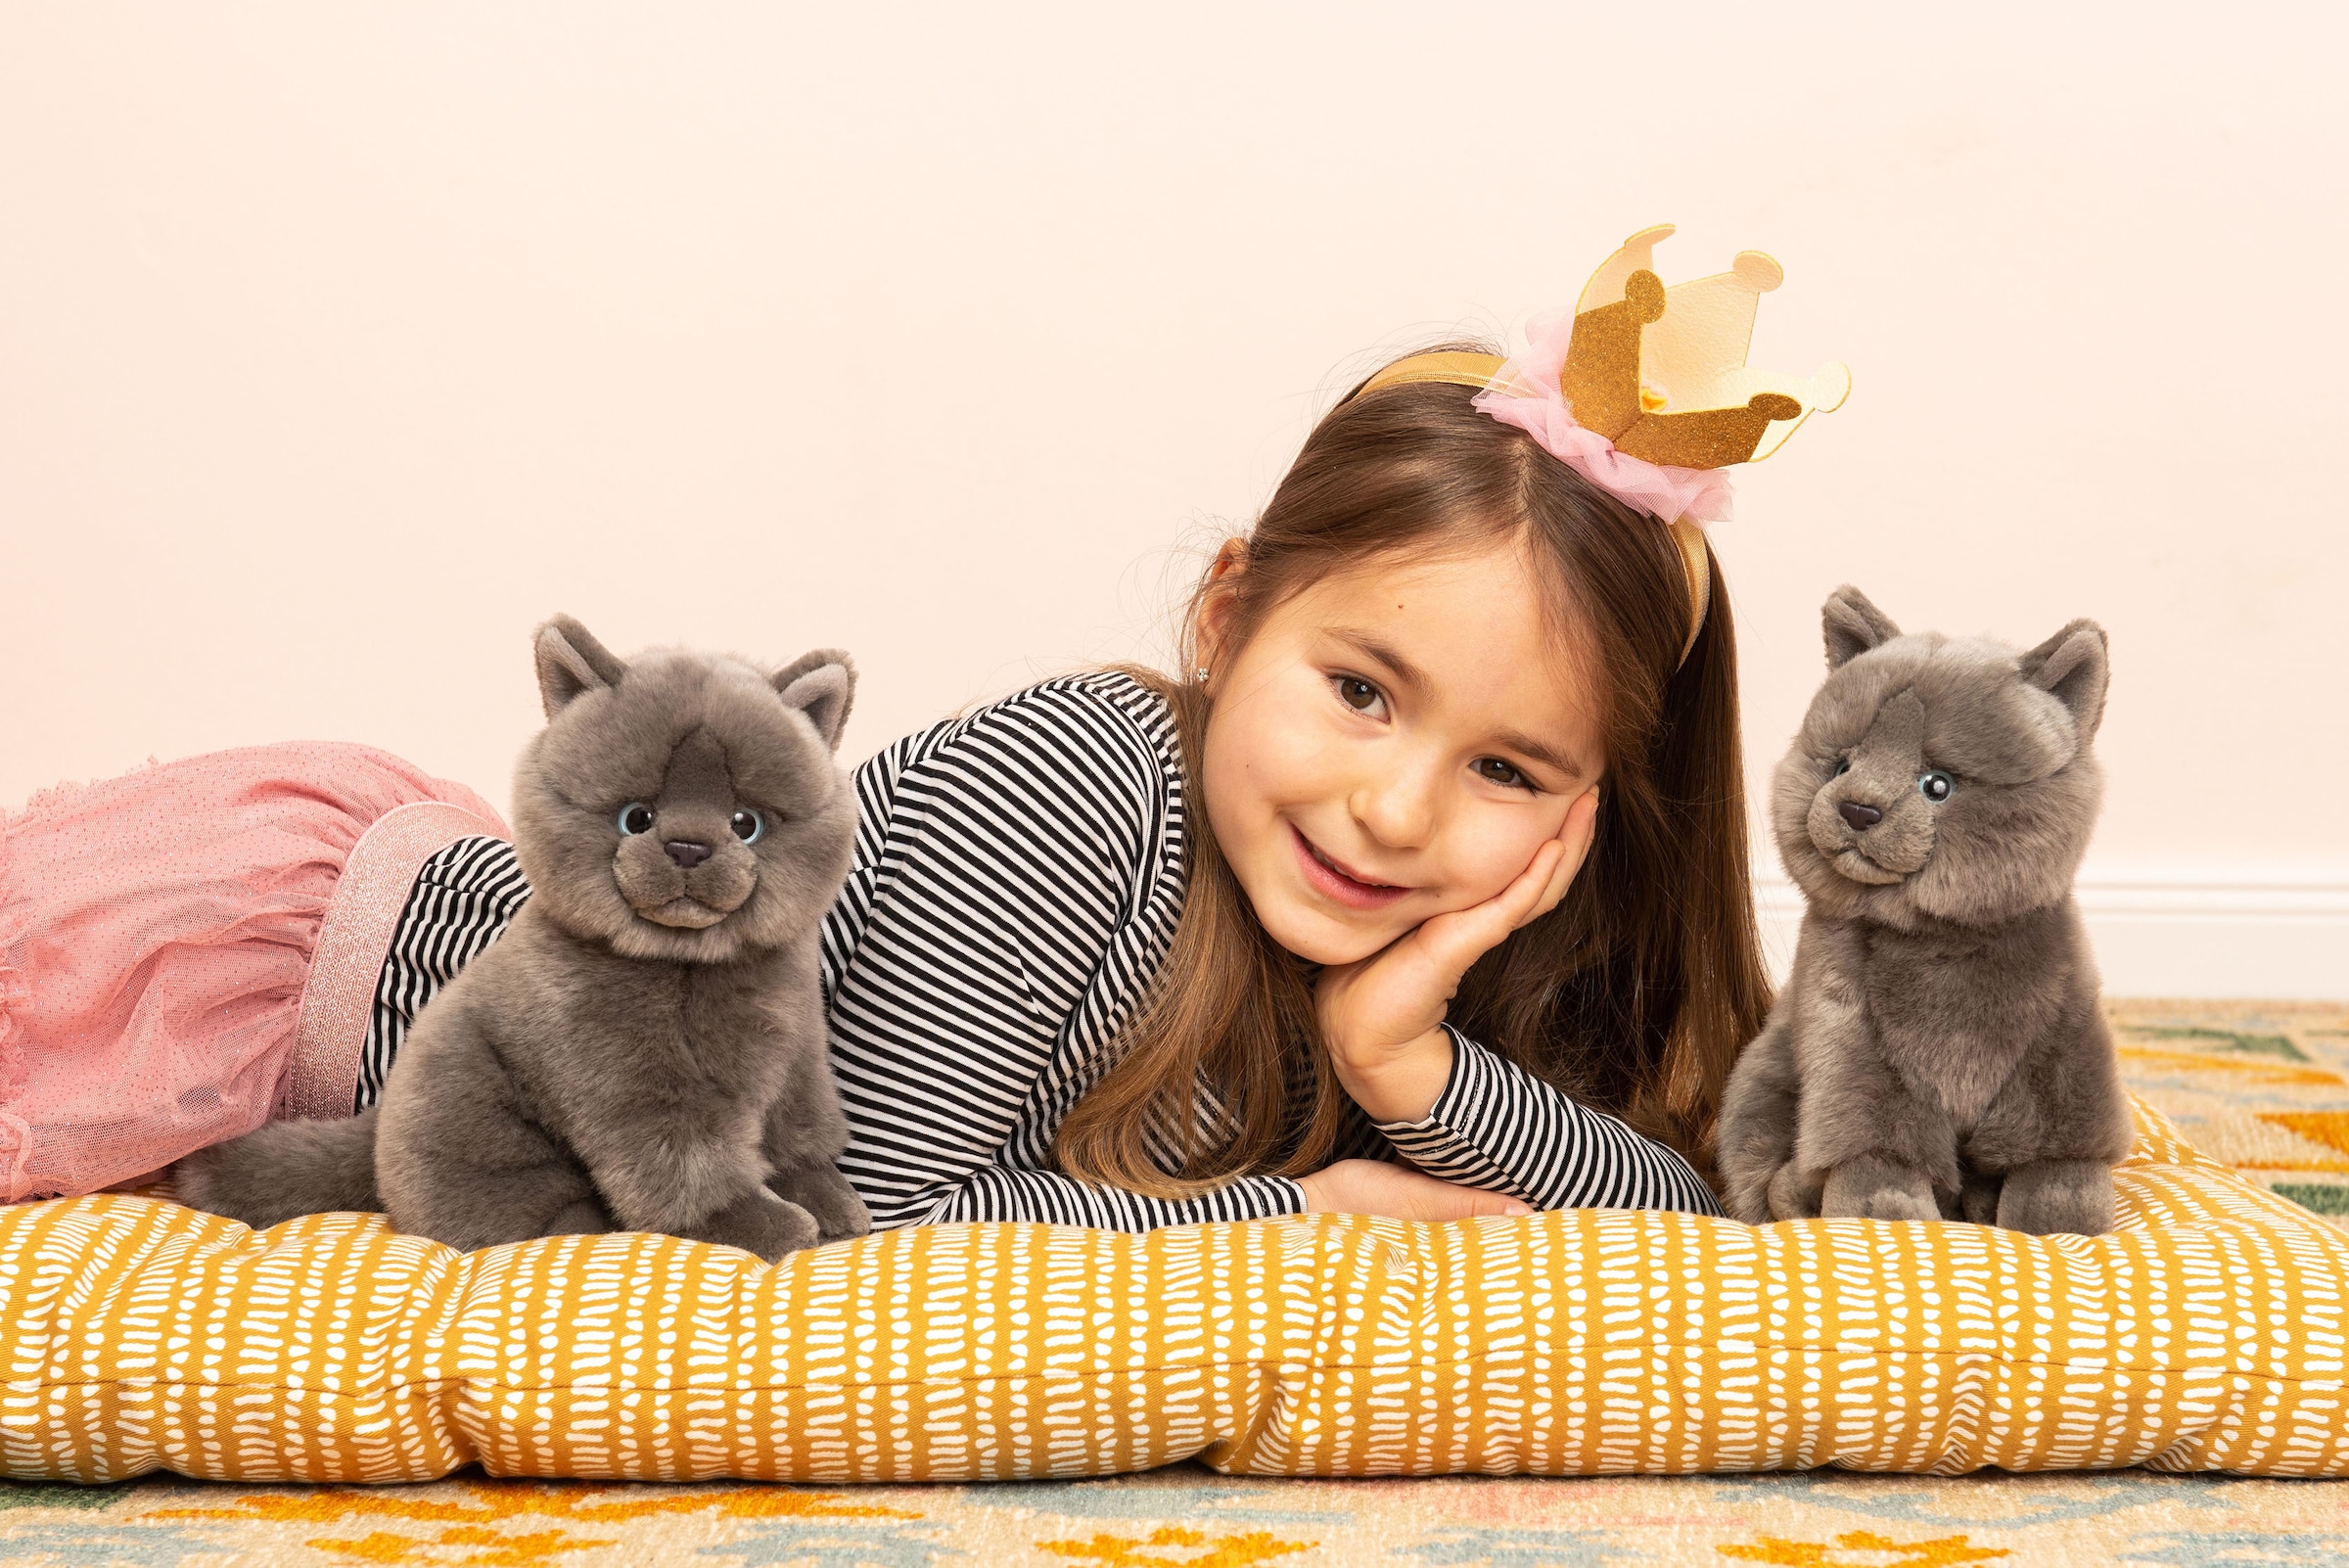 Teddy Hermann® Kuscheltier »Kartäuser Katze sitzend grau, 20 cm«, zum Teil aus recyceltem Material